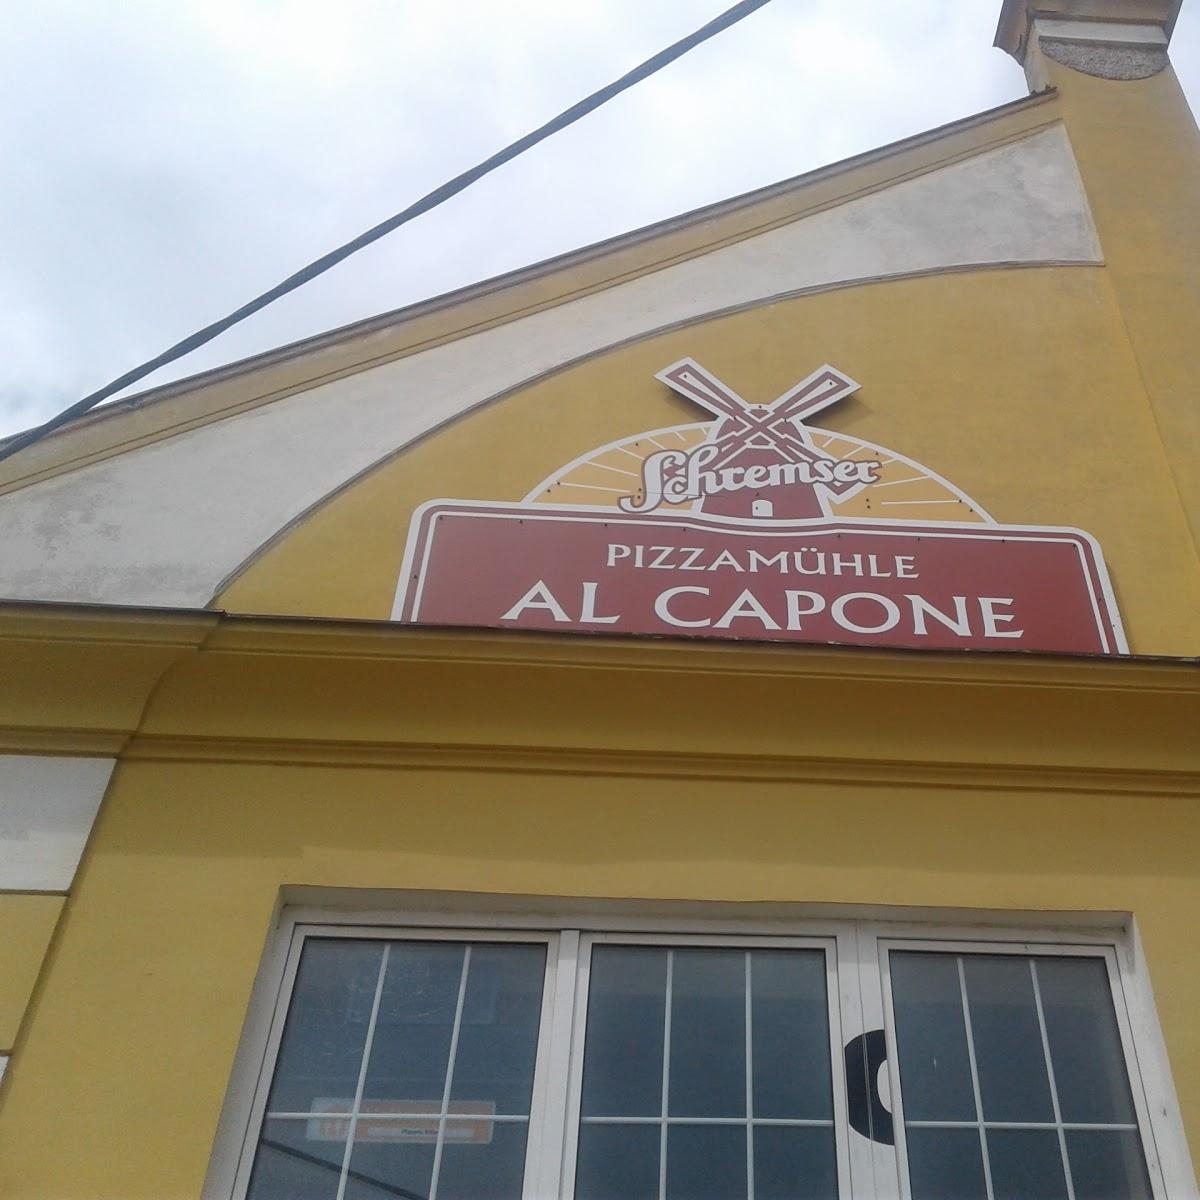 Restaurant "Pizzeria Al Capone" in Retz